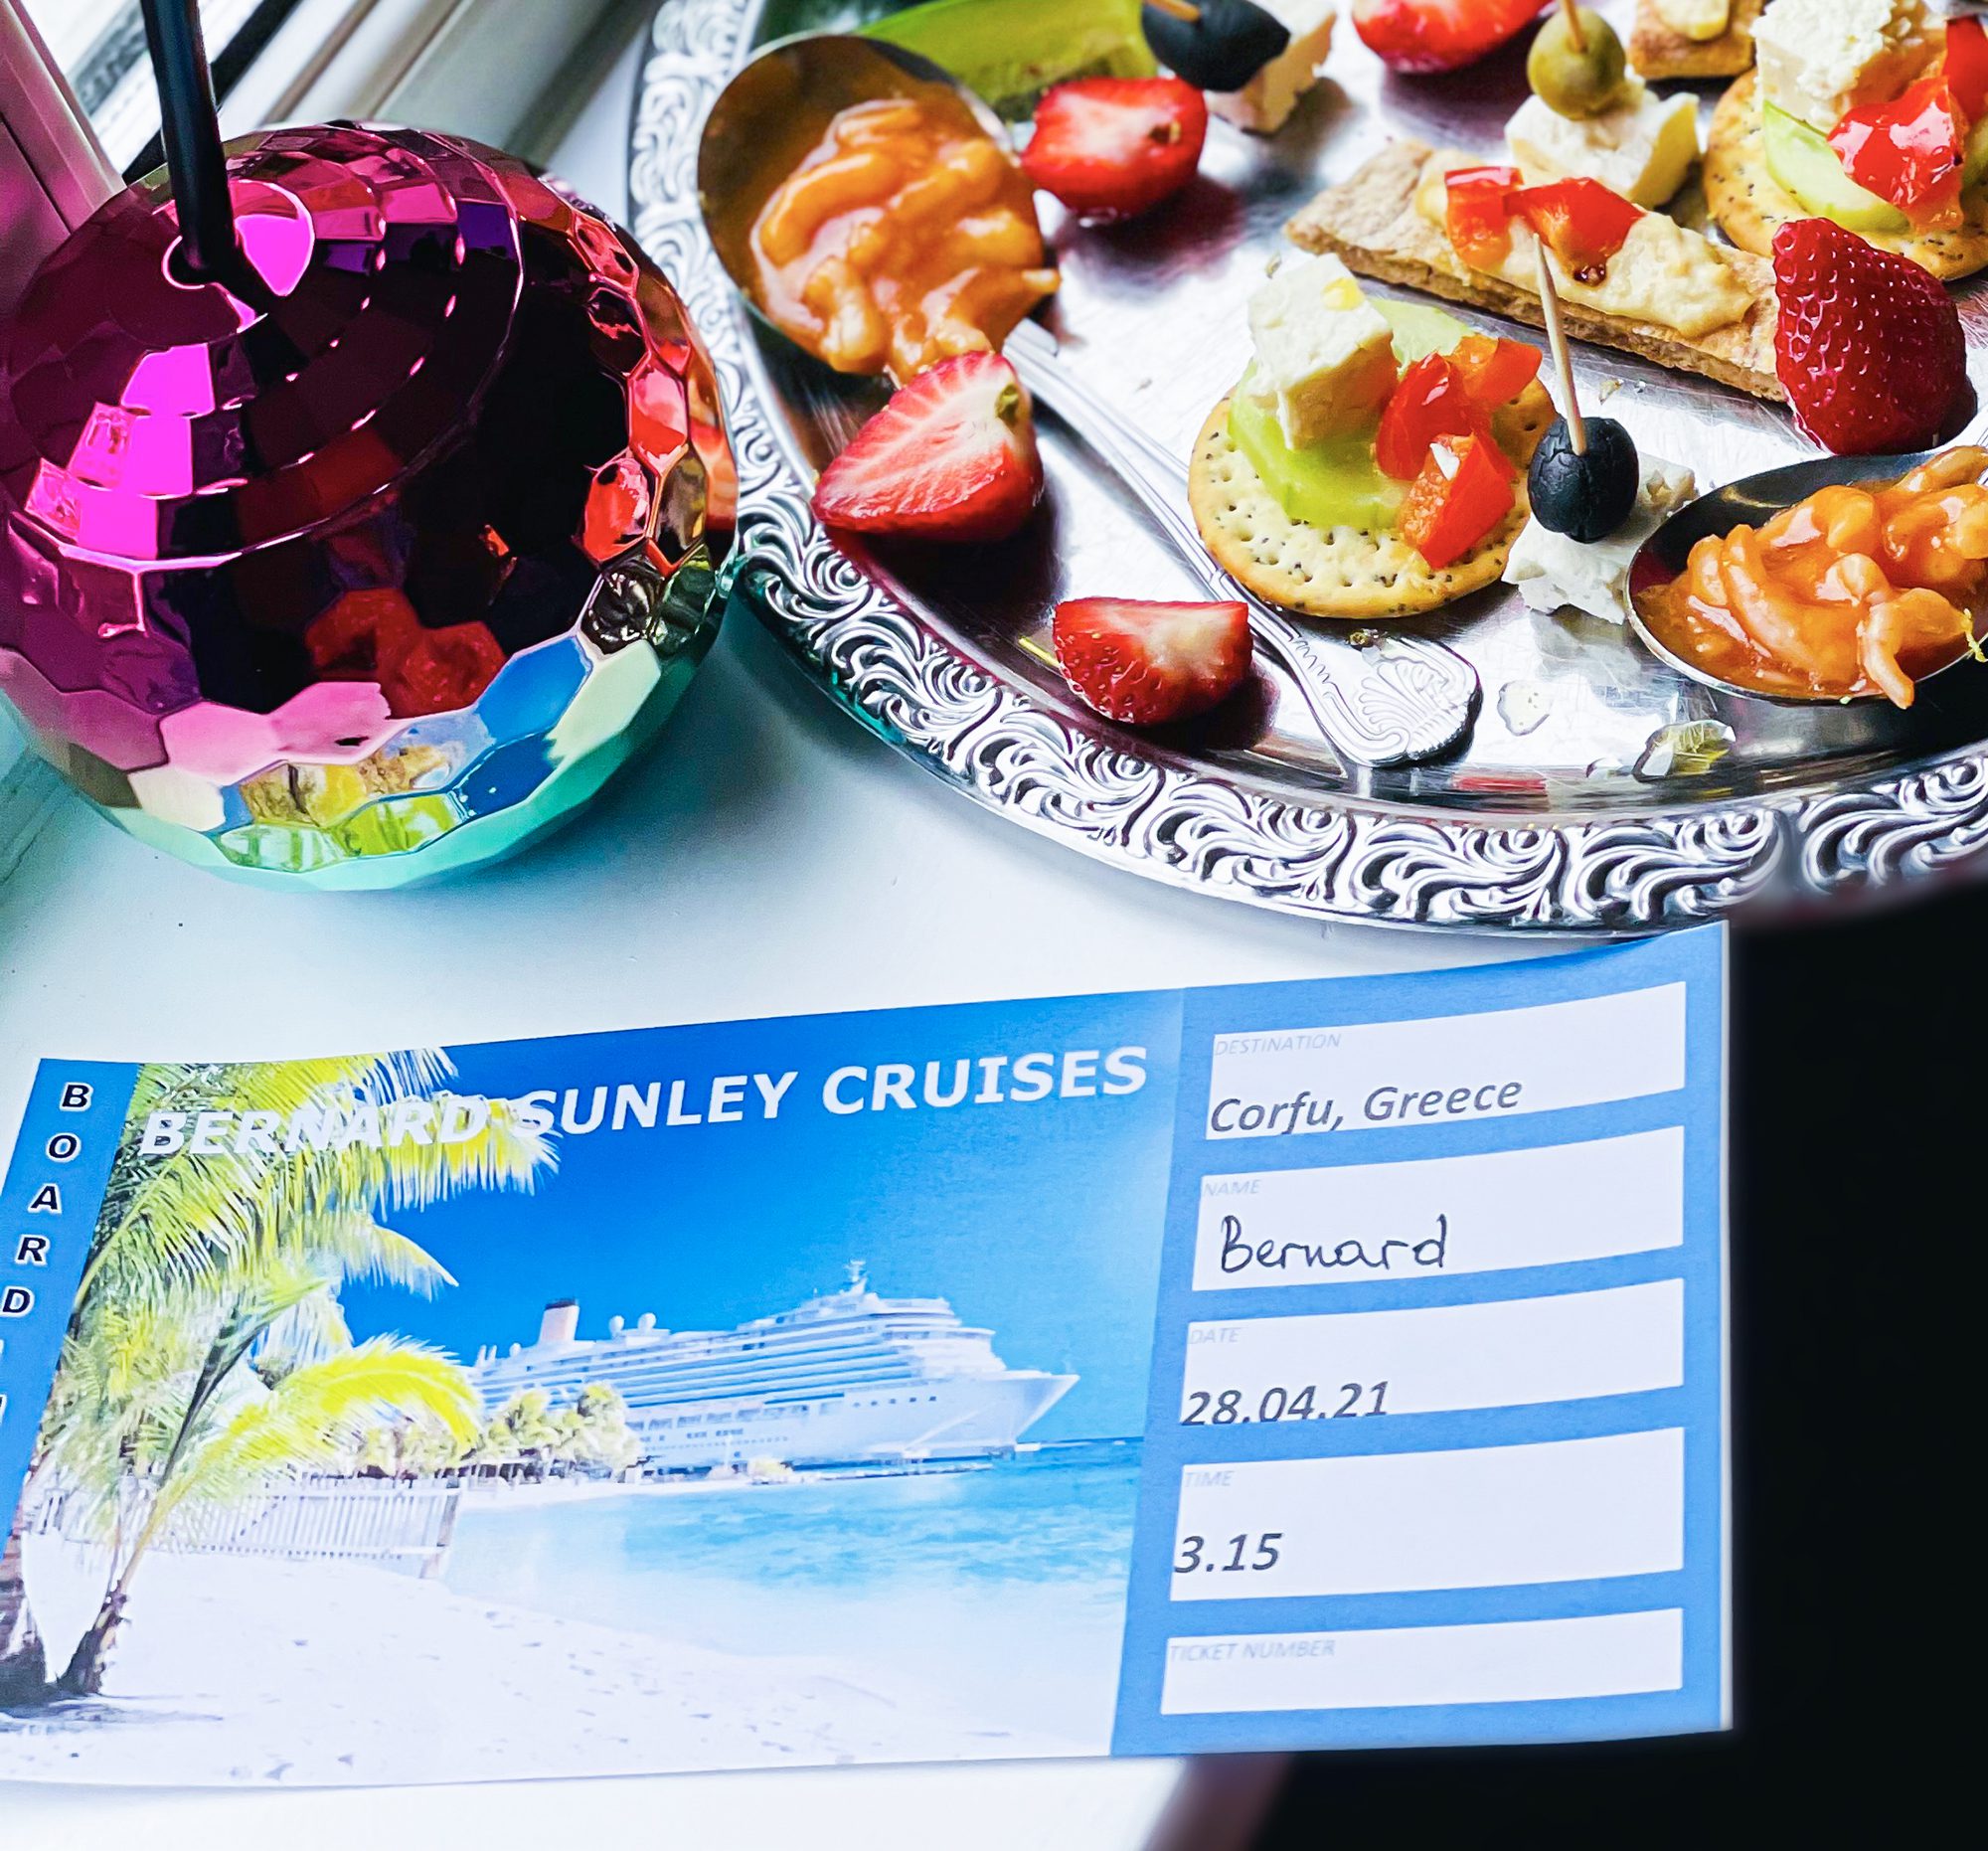 A cruise ticket to Corfu, Greece